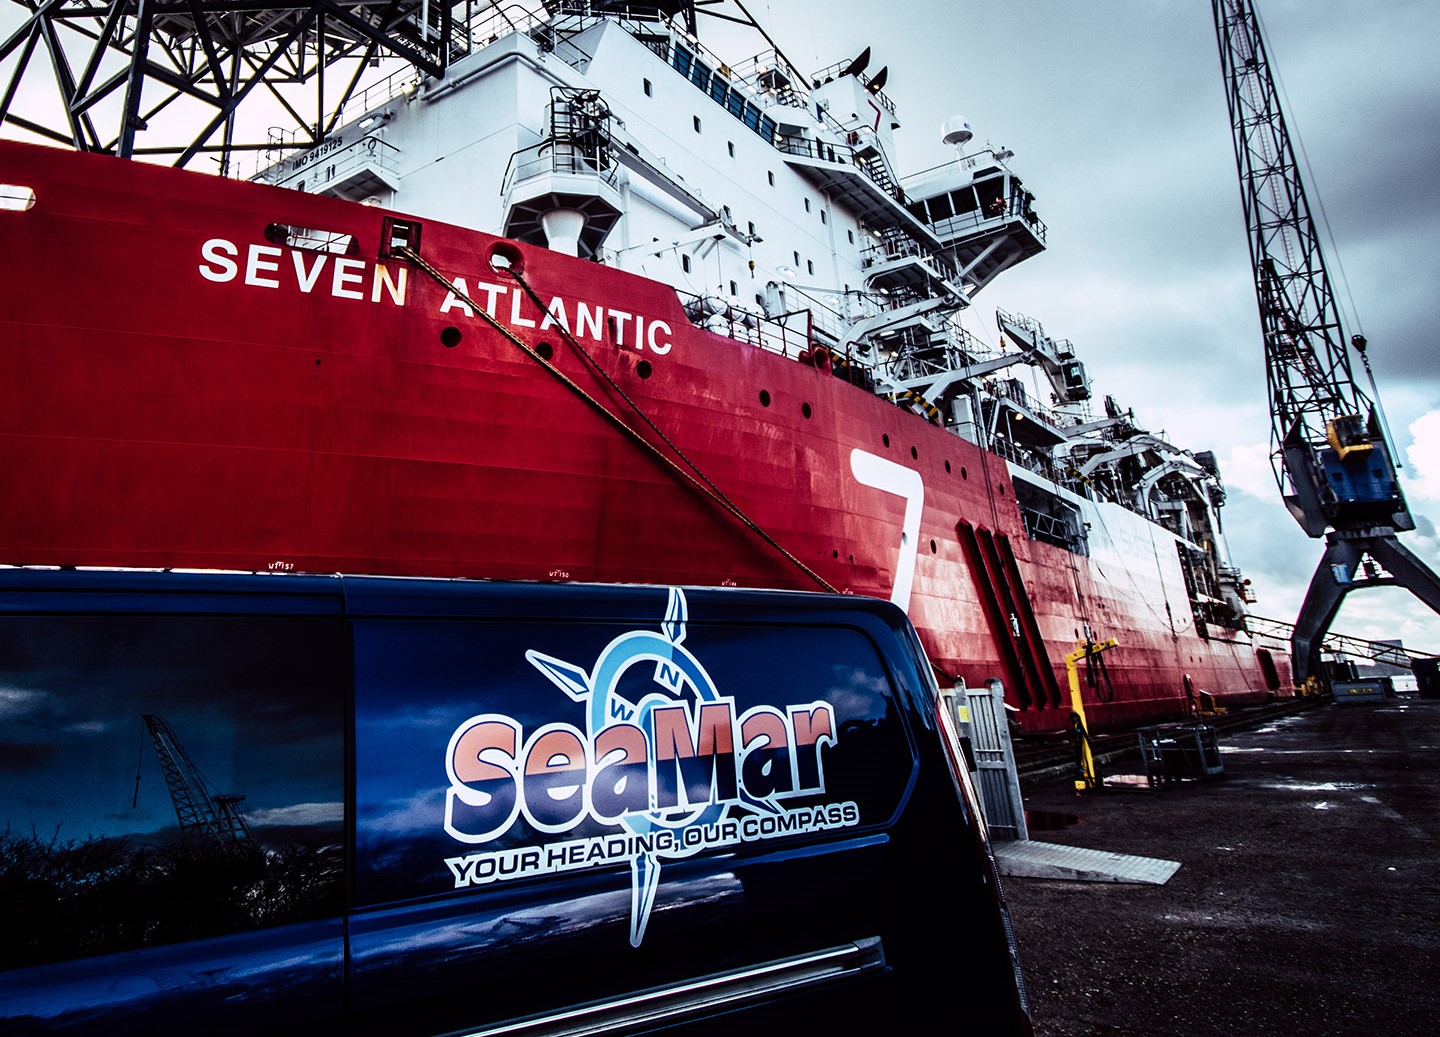 
Una furgoneta de SeaMar en el puerto con el buque "Seven Atlantic" y una grúa al fondo